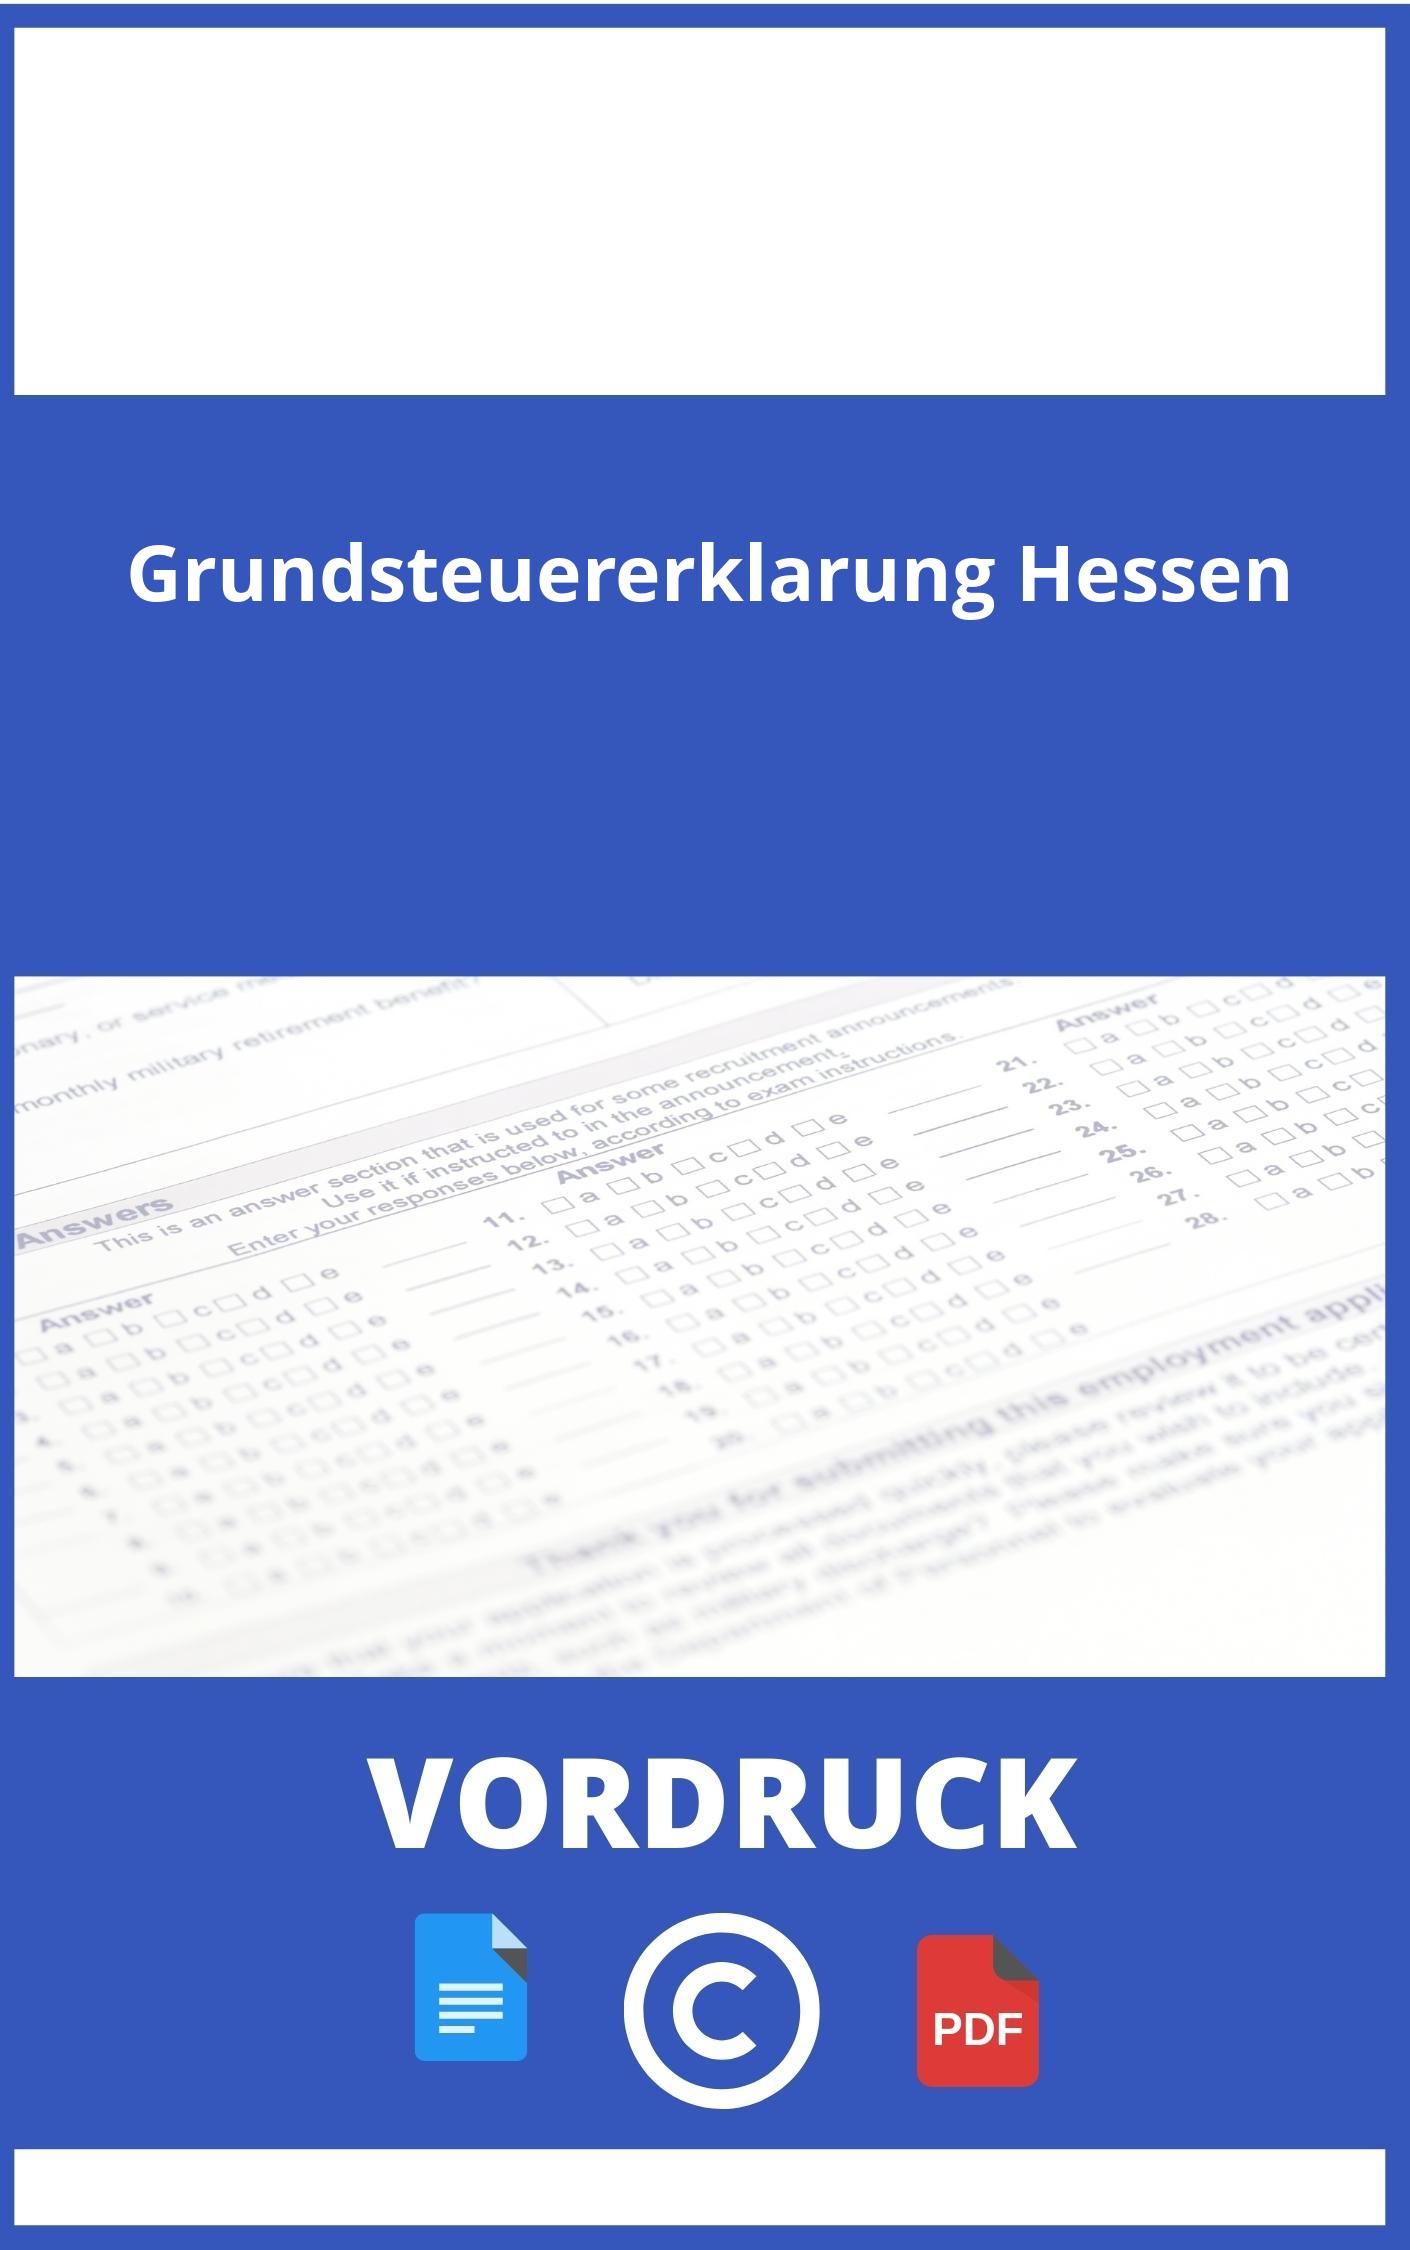 Vordruck Grundsteuererklärung Hessen